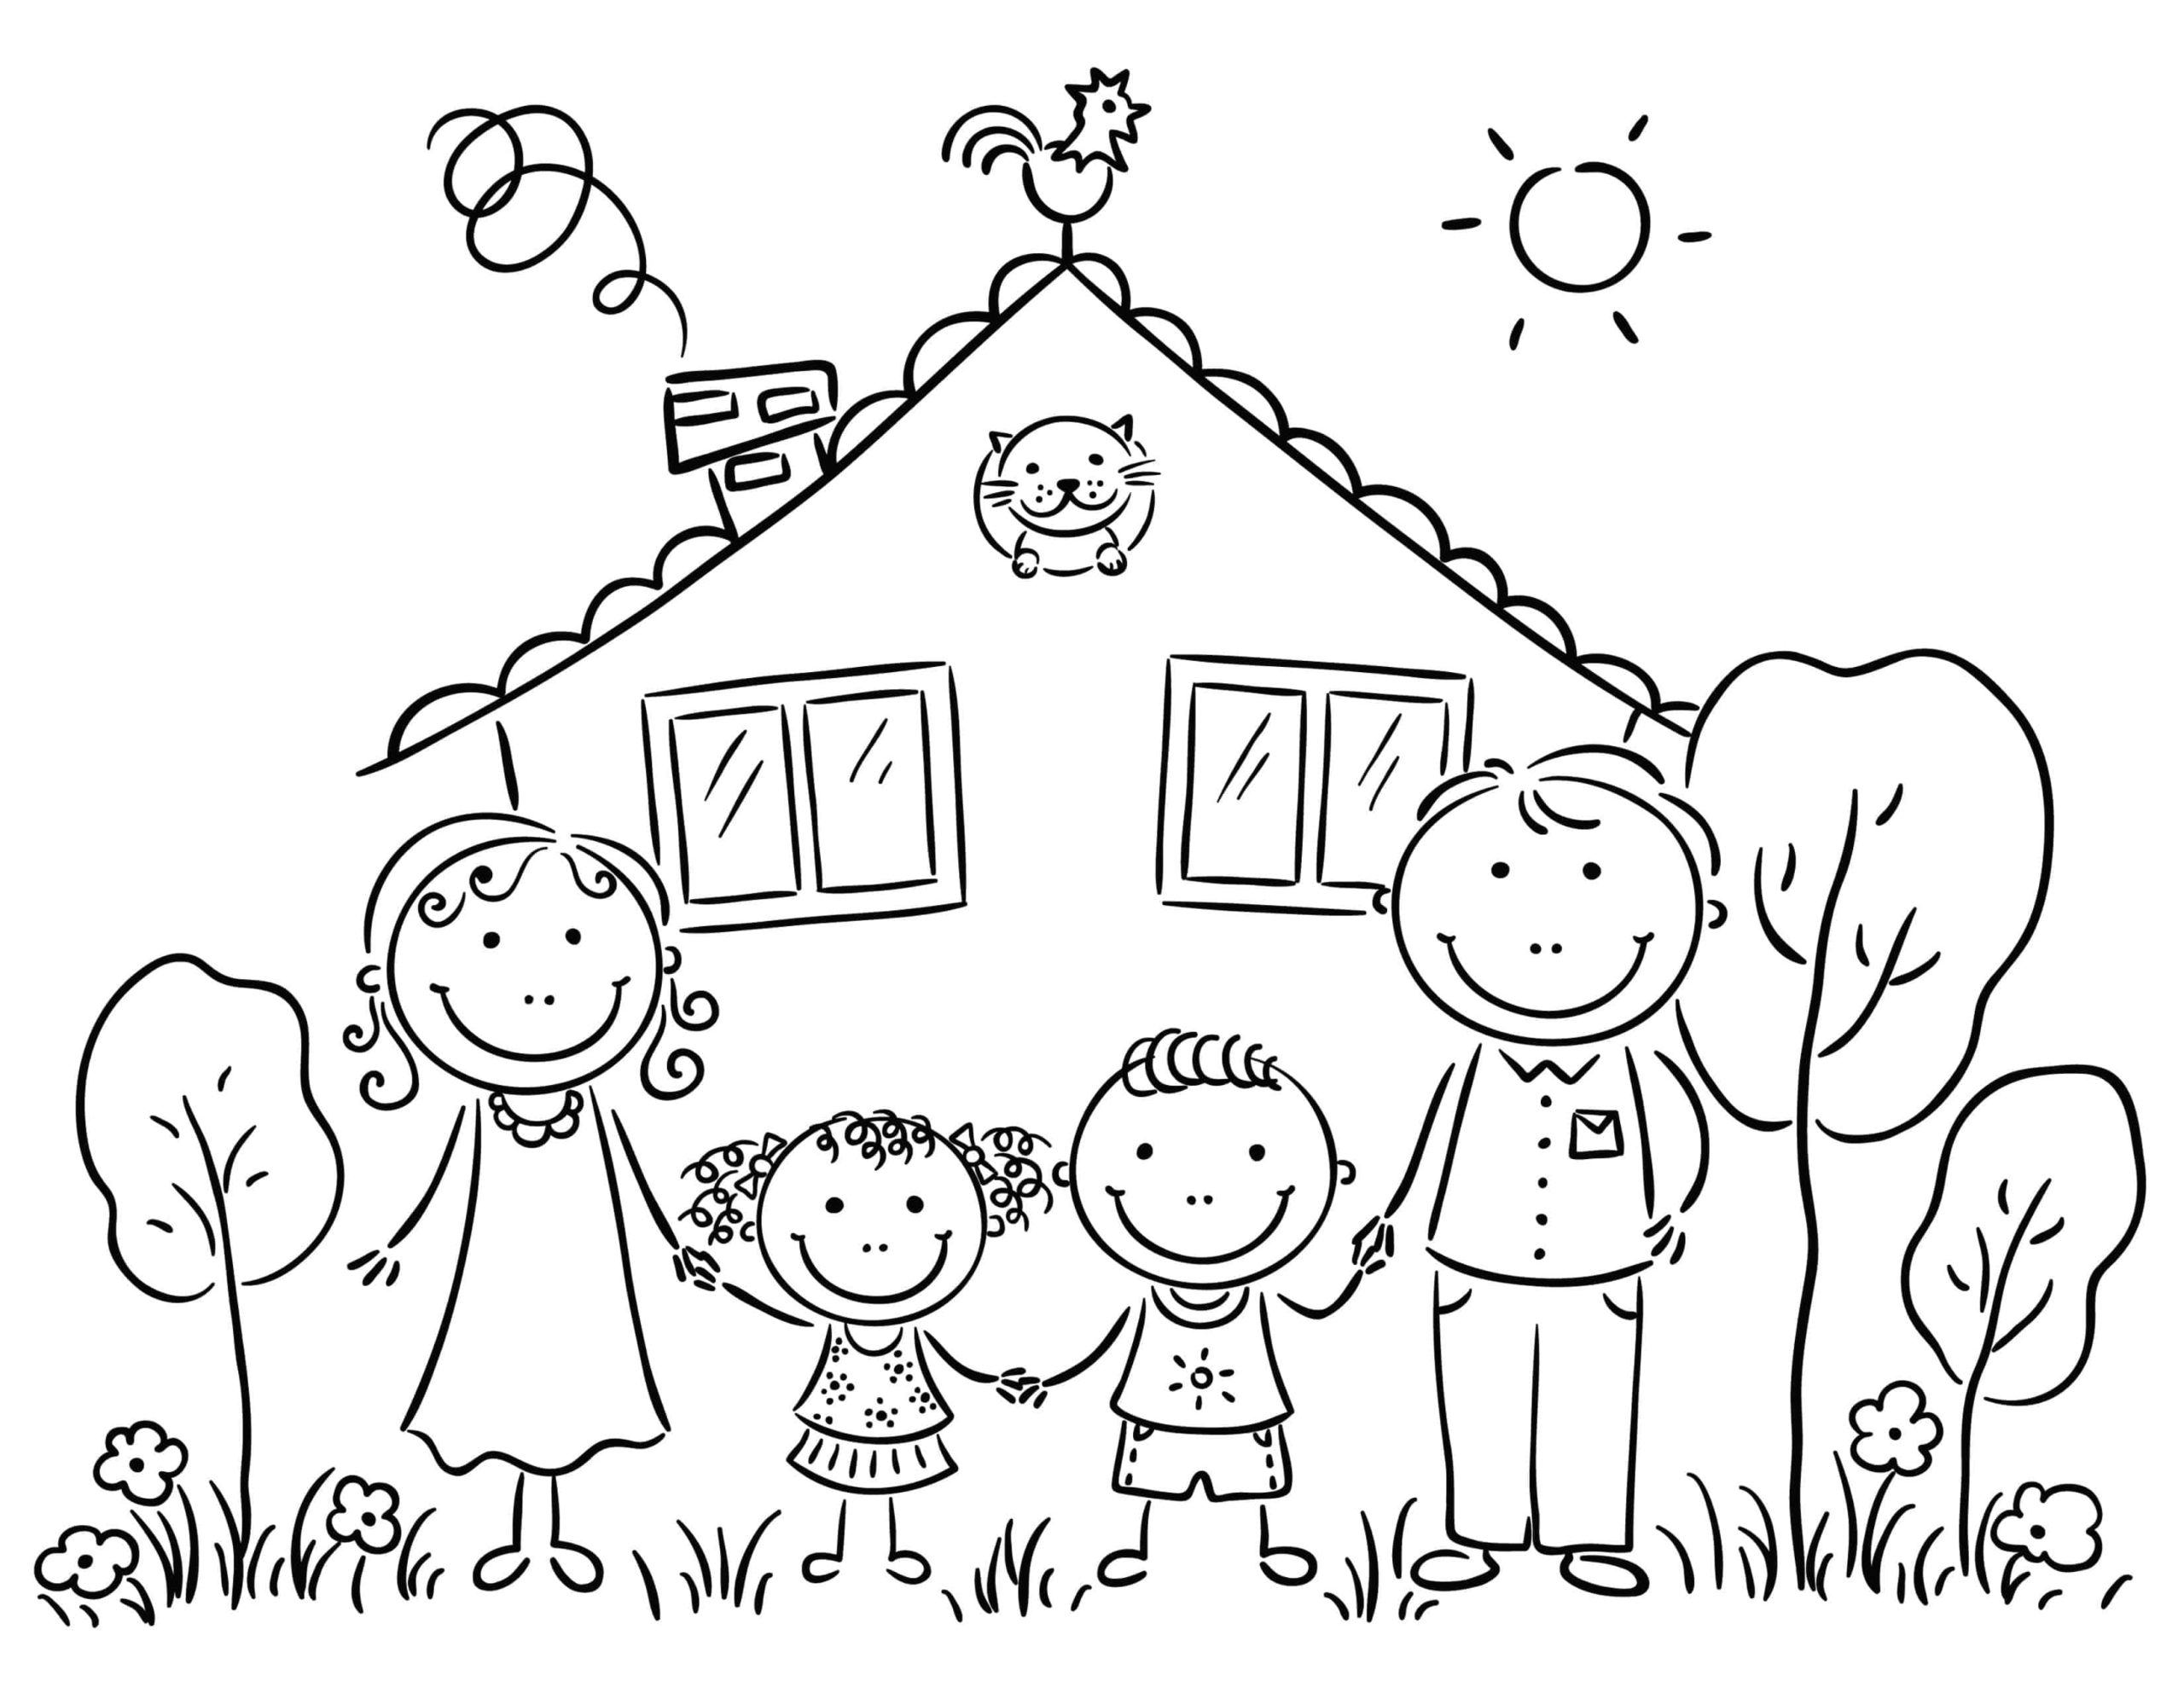 Картинки раскраски про семью для детей